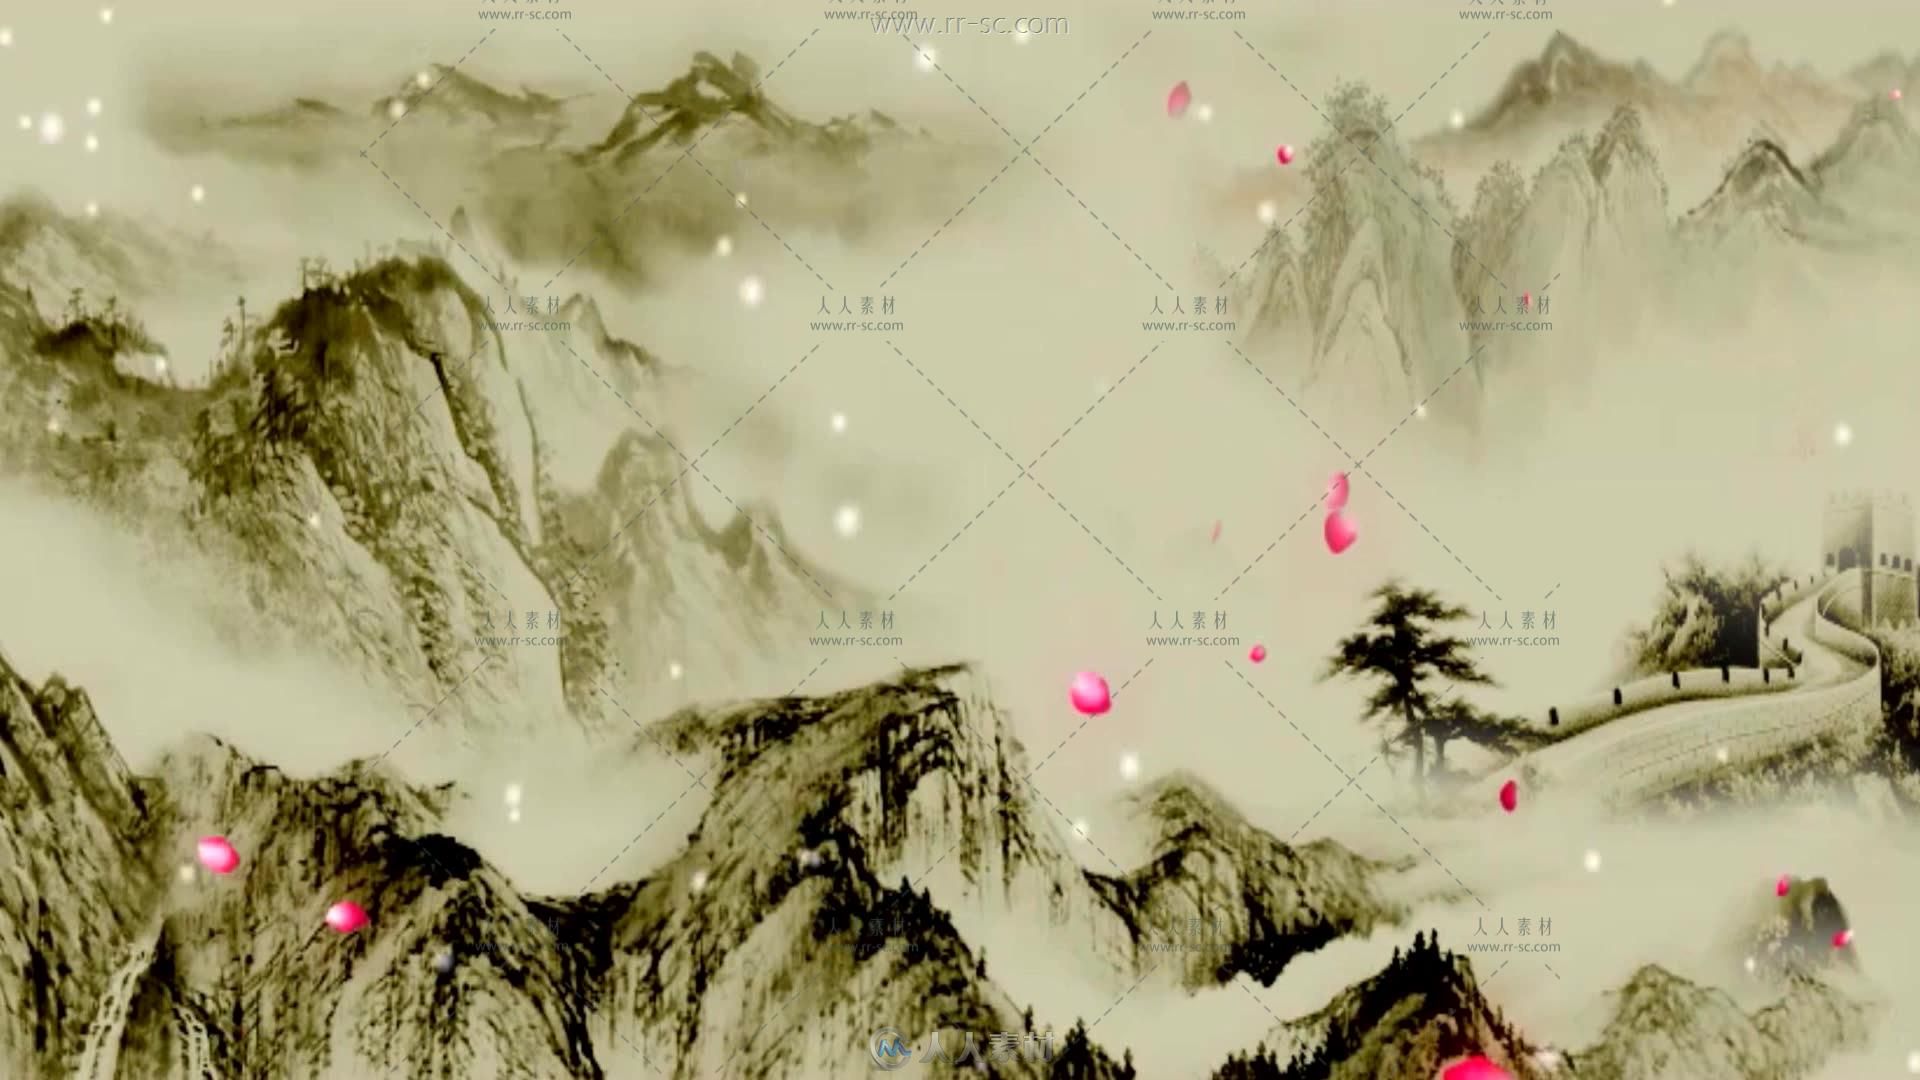 中国水墨画风格沁园春雪背景视频素材 - 视频素